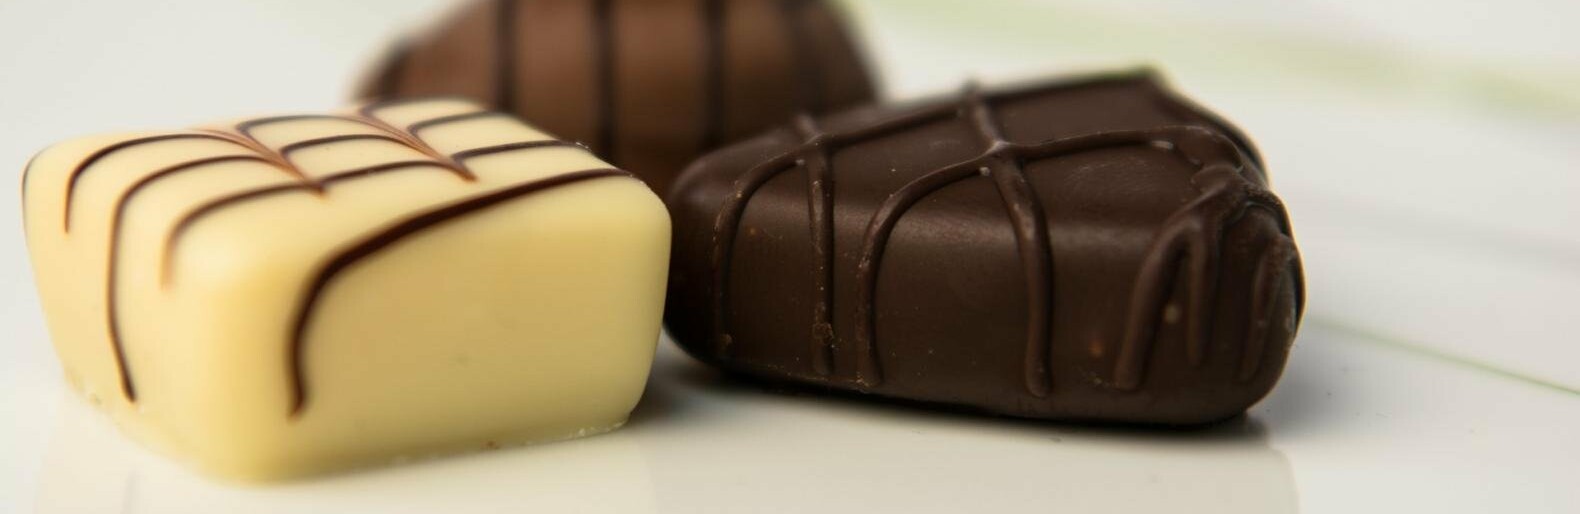 У Запоріжжі суд виправдав посадовця у справі про закупівлю неякісних солодких подарунків для дітей